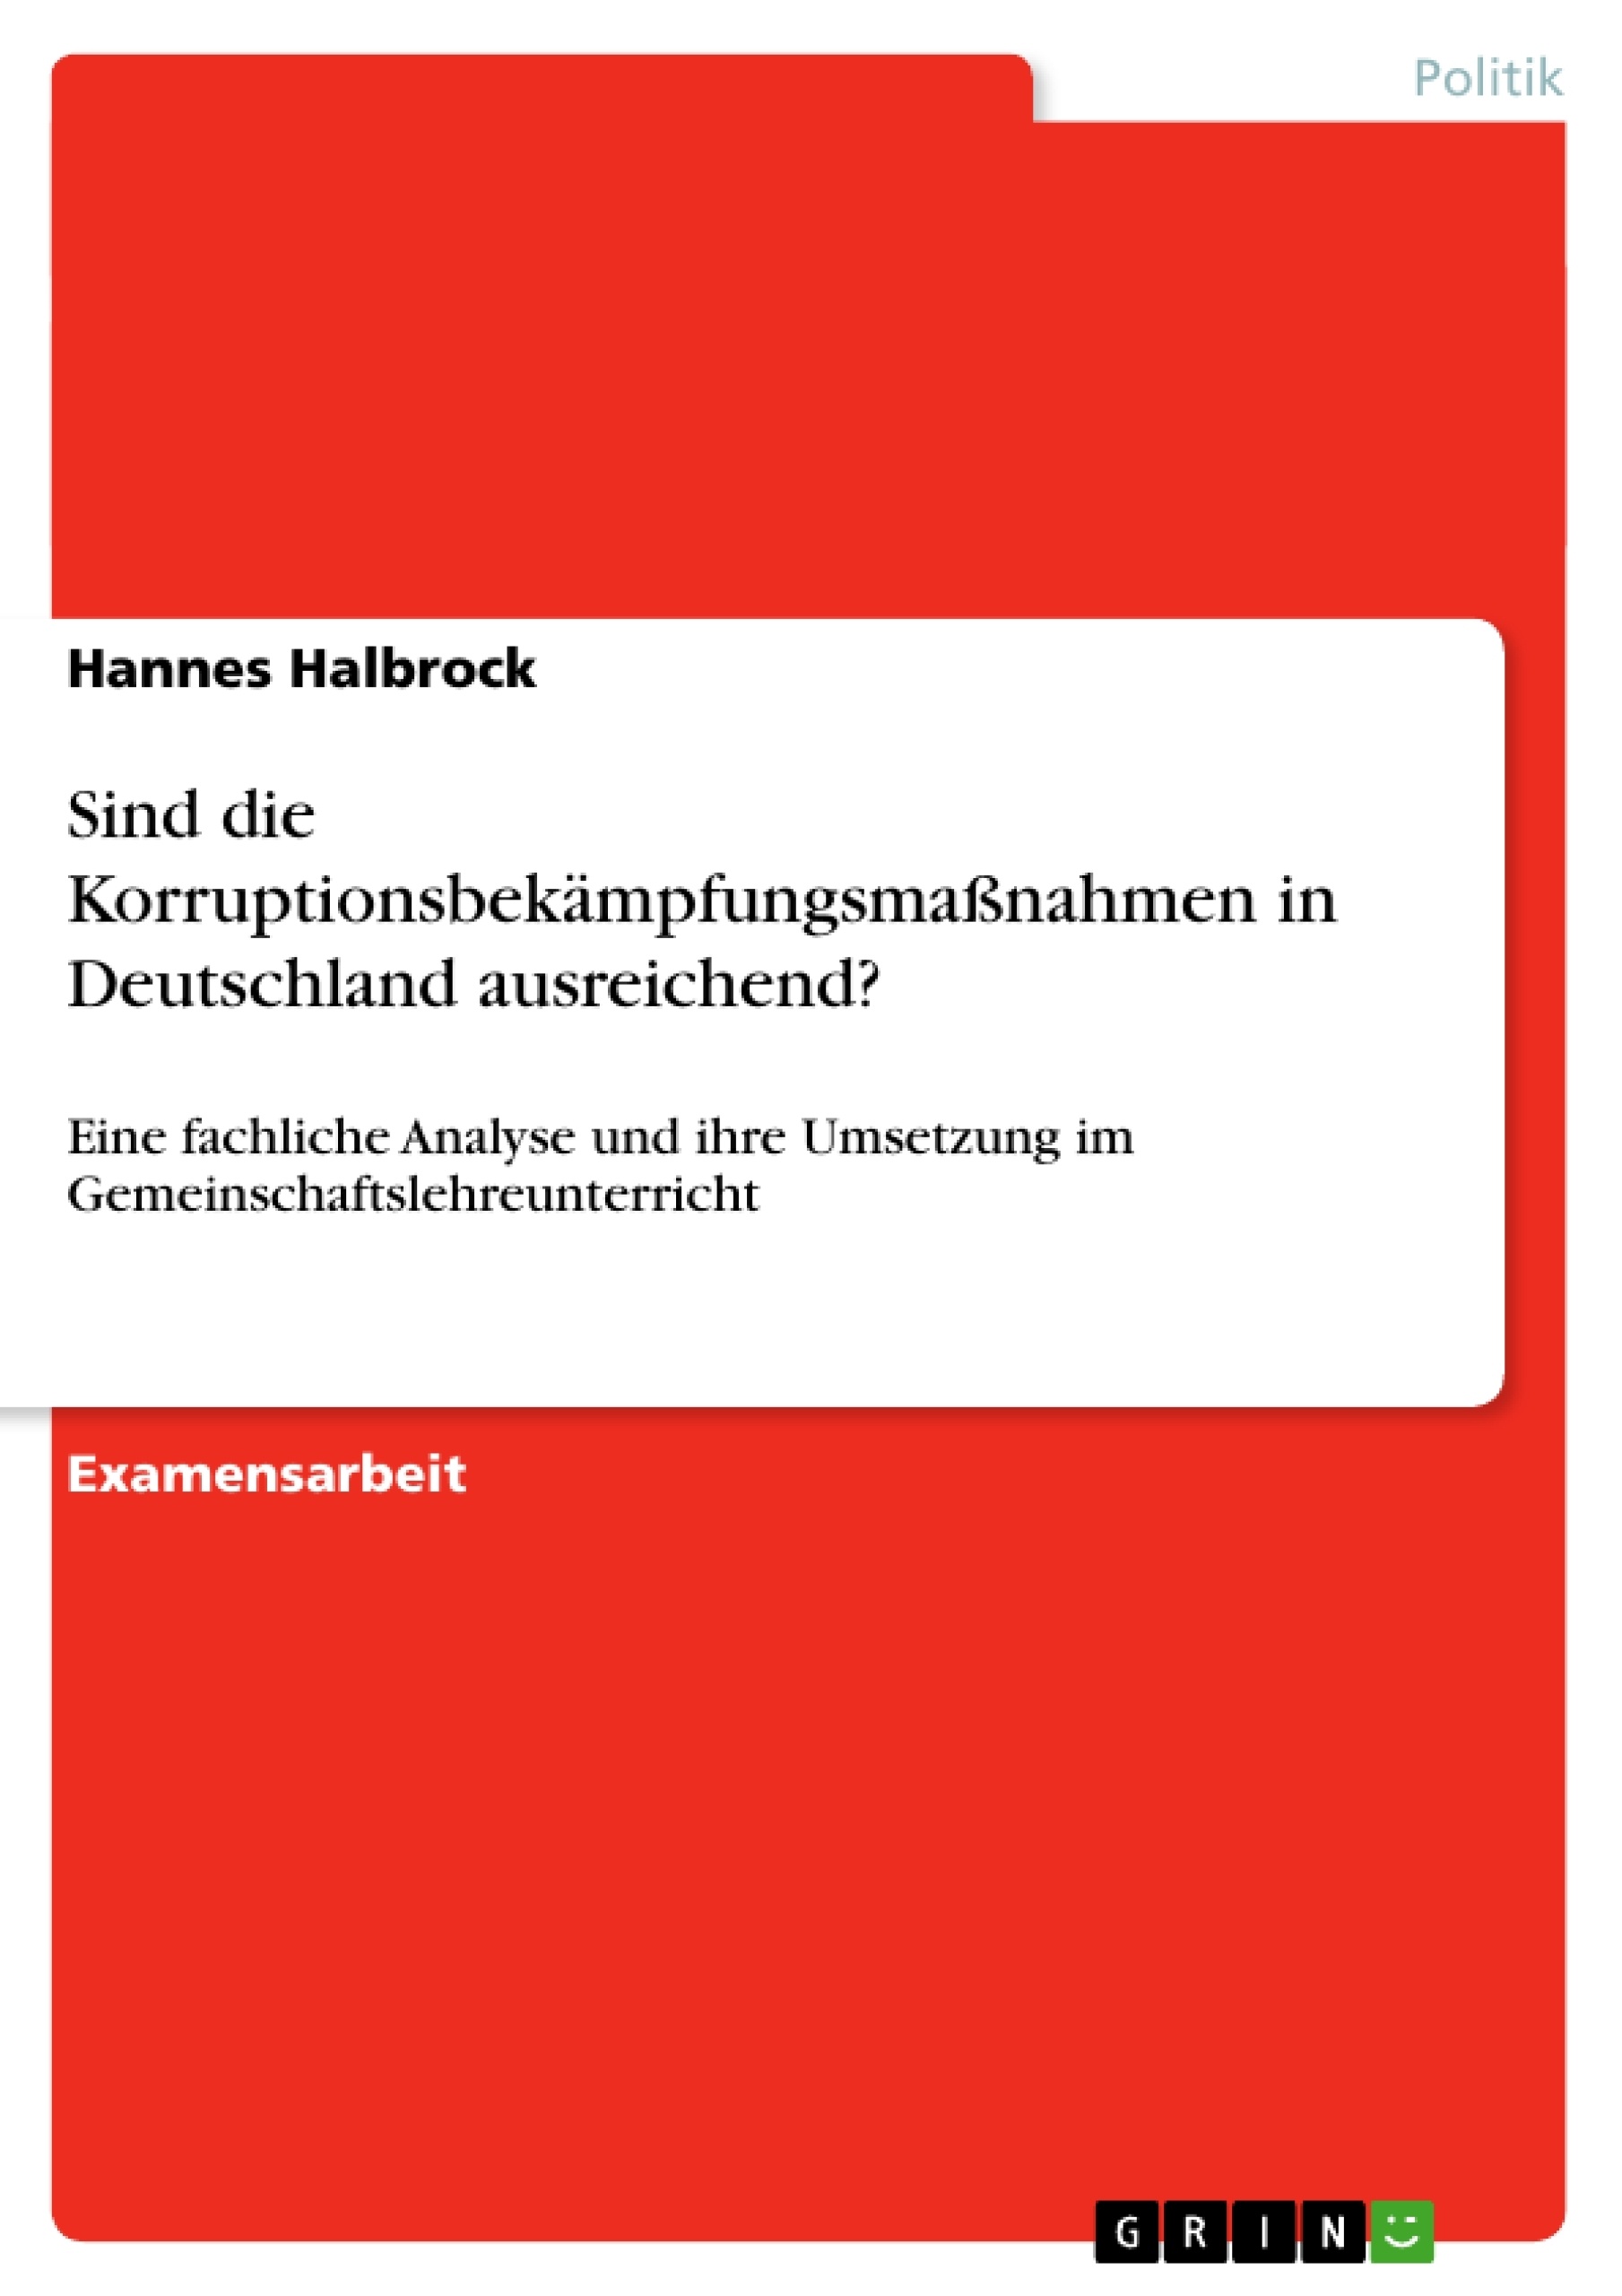 Titre: Sind die Korruptionsbekämpfungsmaßnahmen in Deutschland ausreichend?